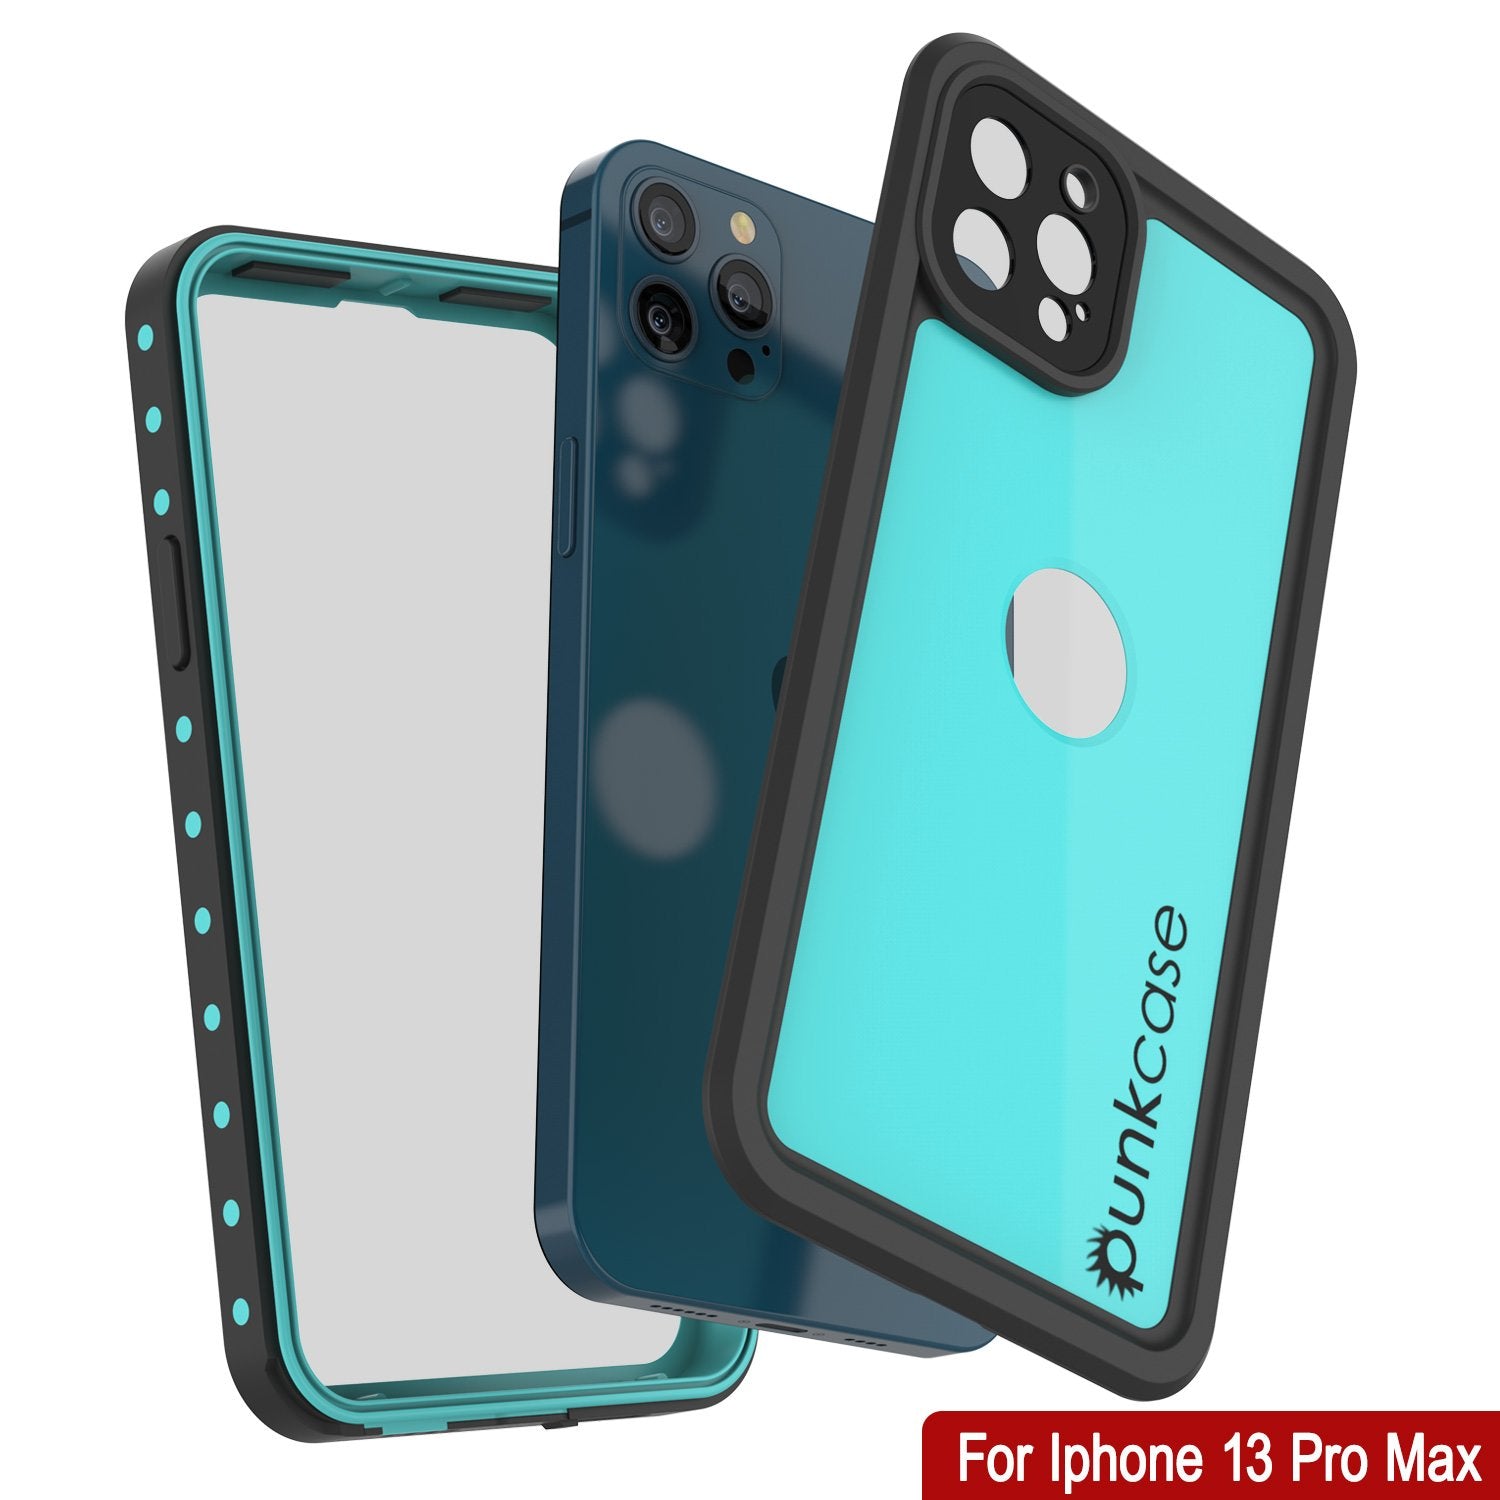 iPhone 13 Pro Max Waterproof IP68 Case, Punkcase [Teal] [StudStar Series] [Slim Fit]